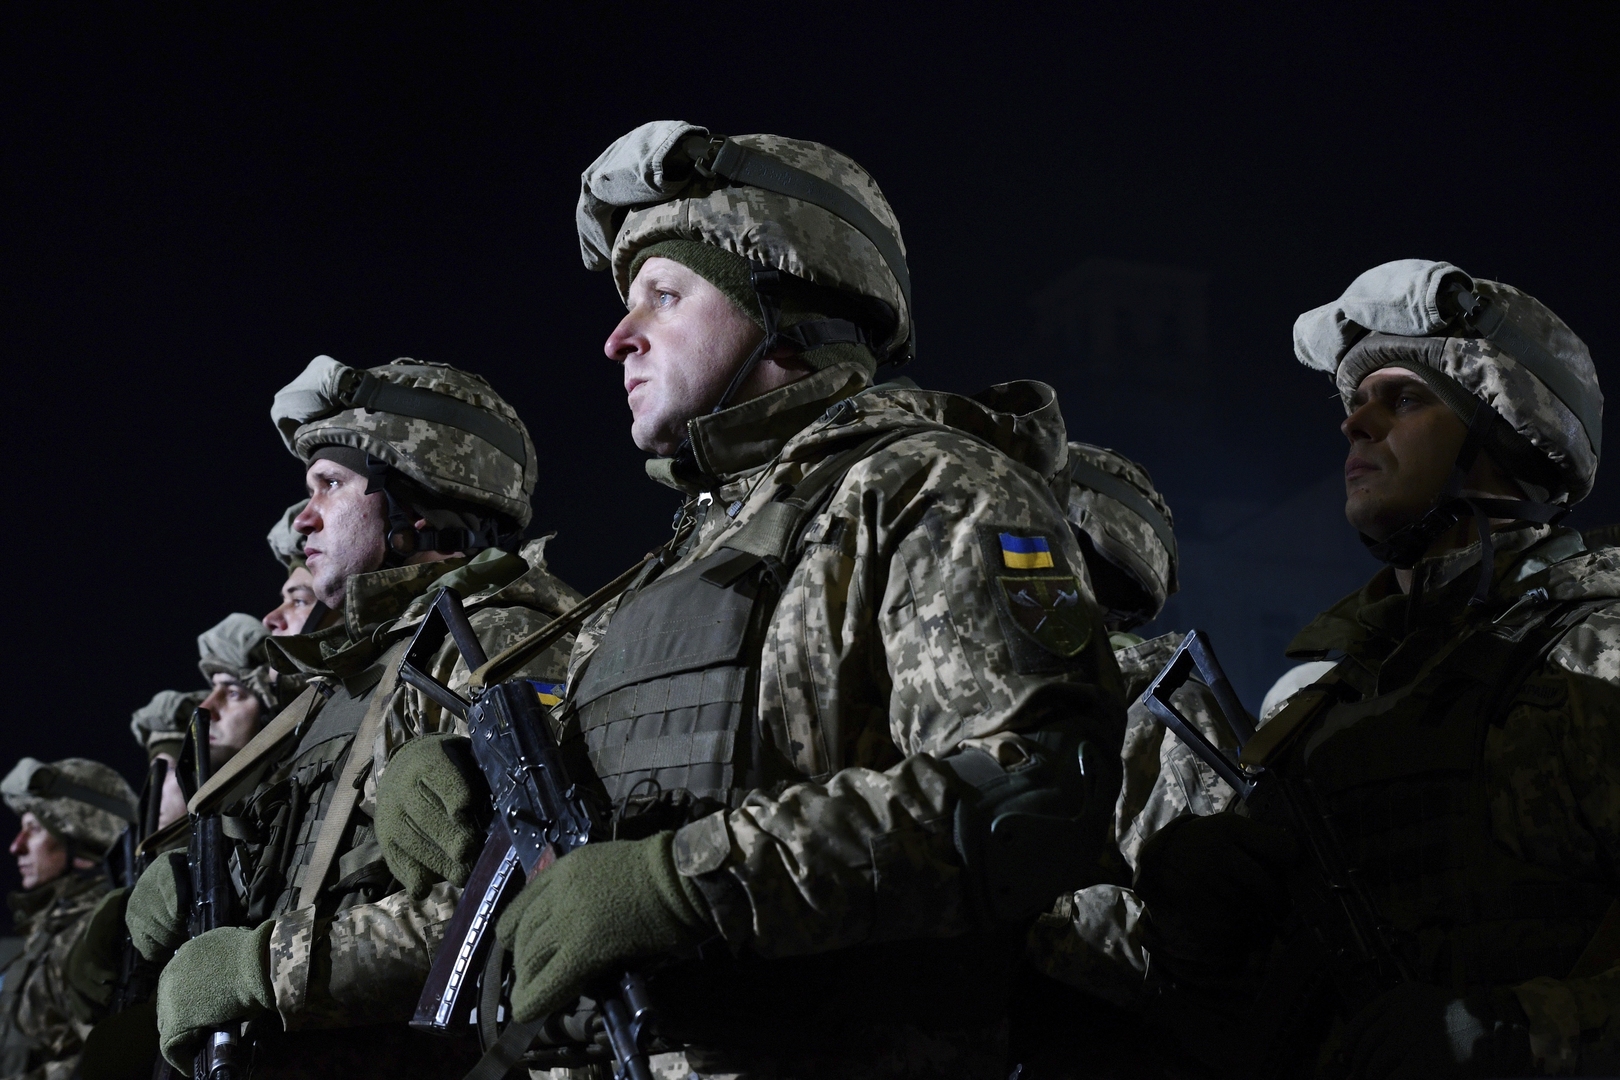 ما هي الدول التي تصدر أسلحة إلى حكومة أوكرانيا على خلفية التصعيد الحالي؟